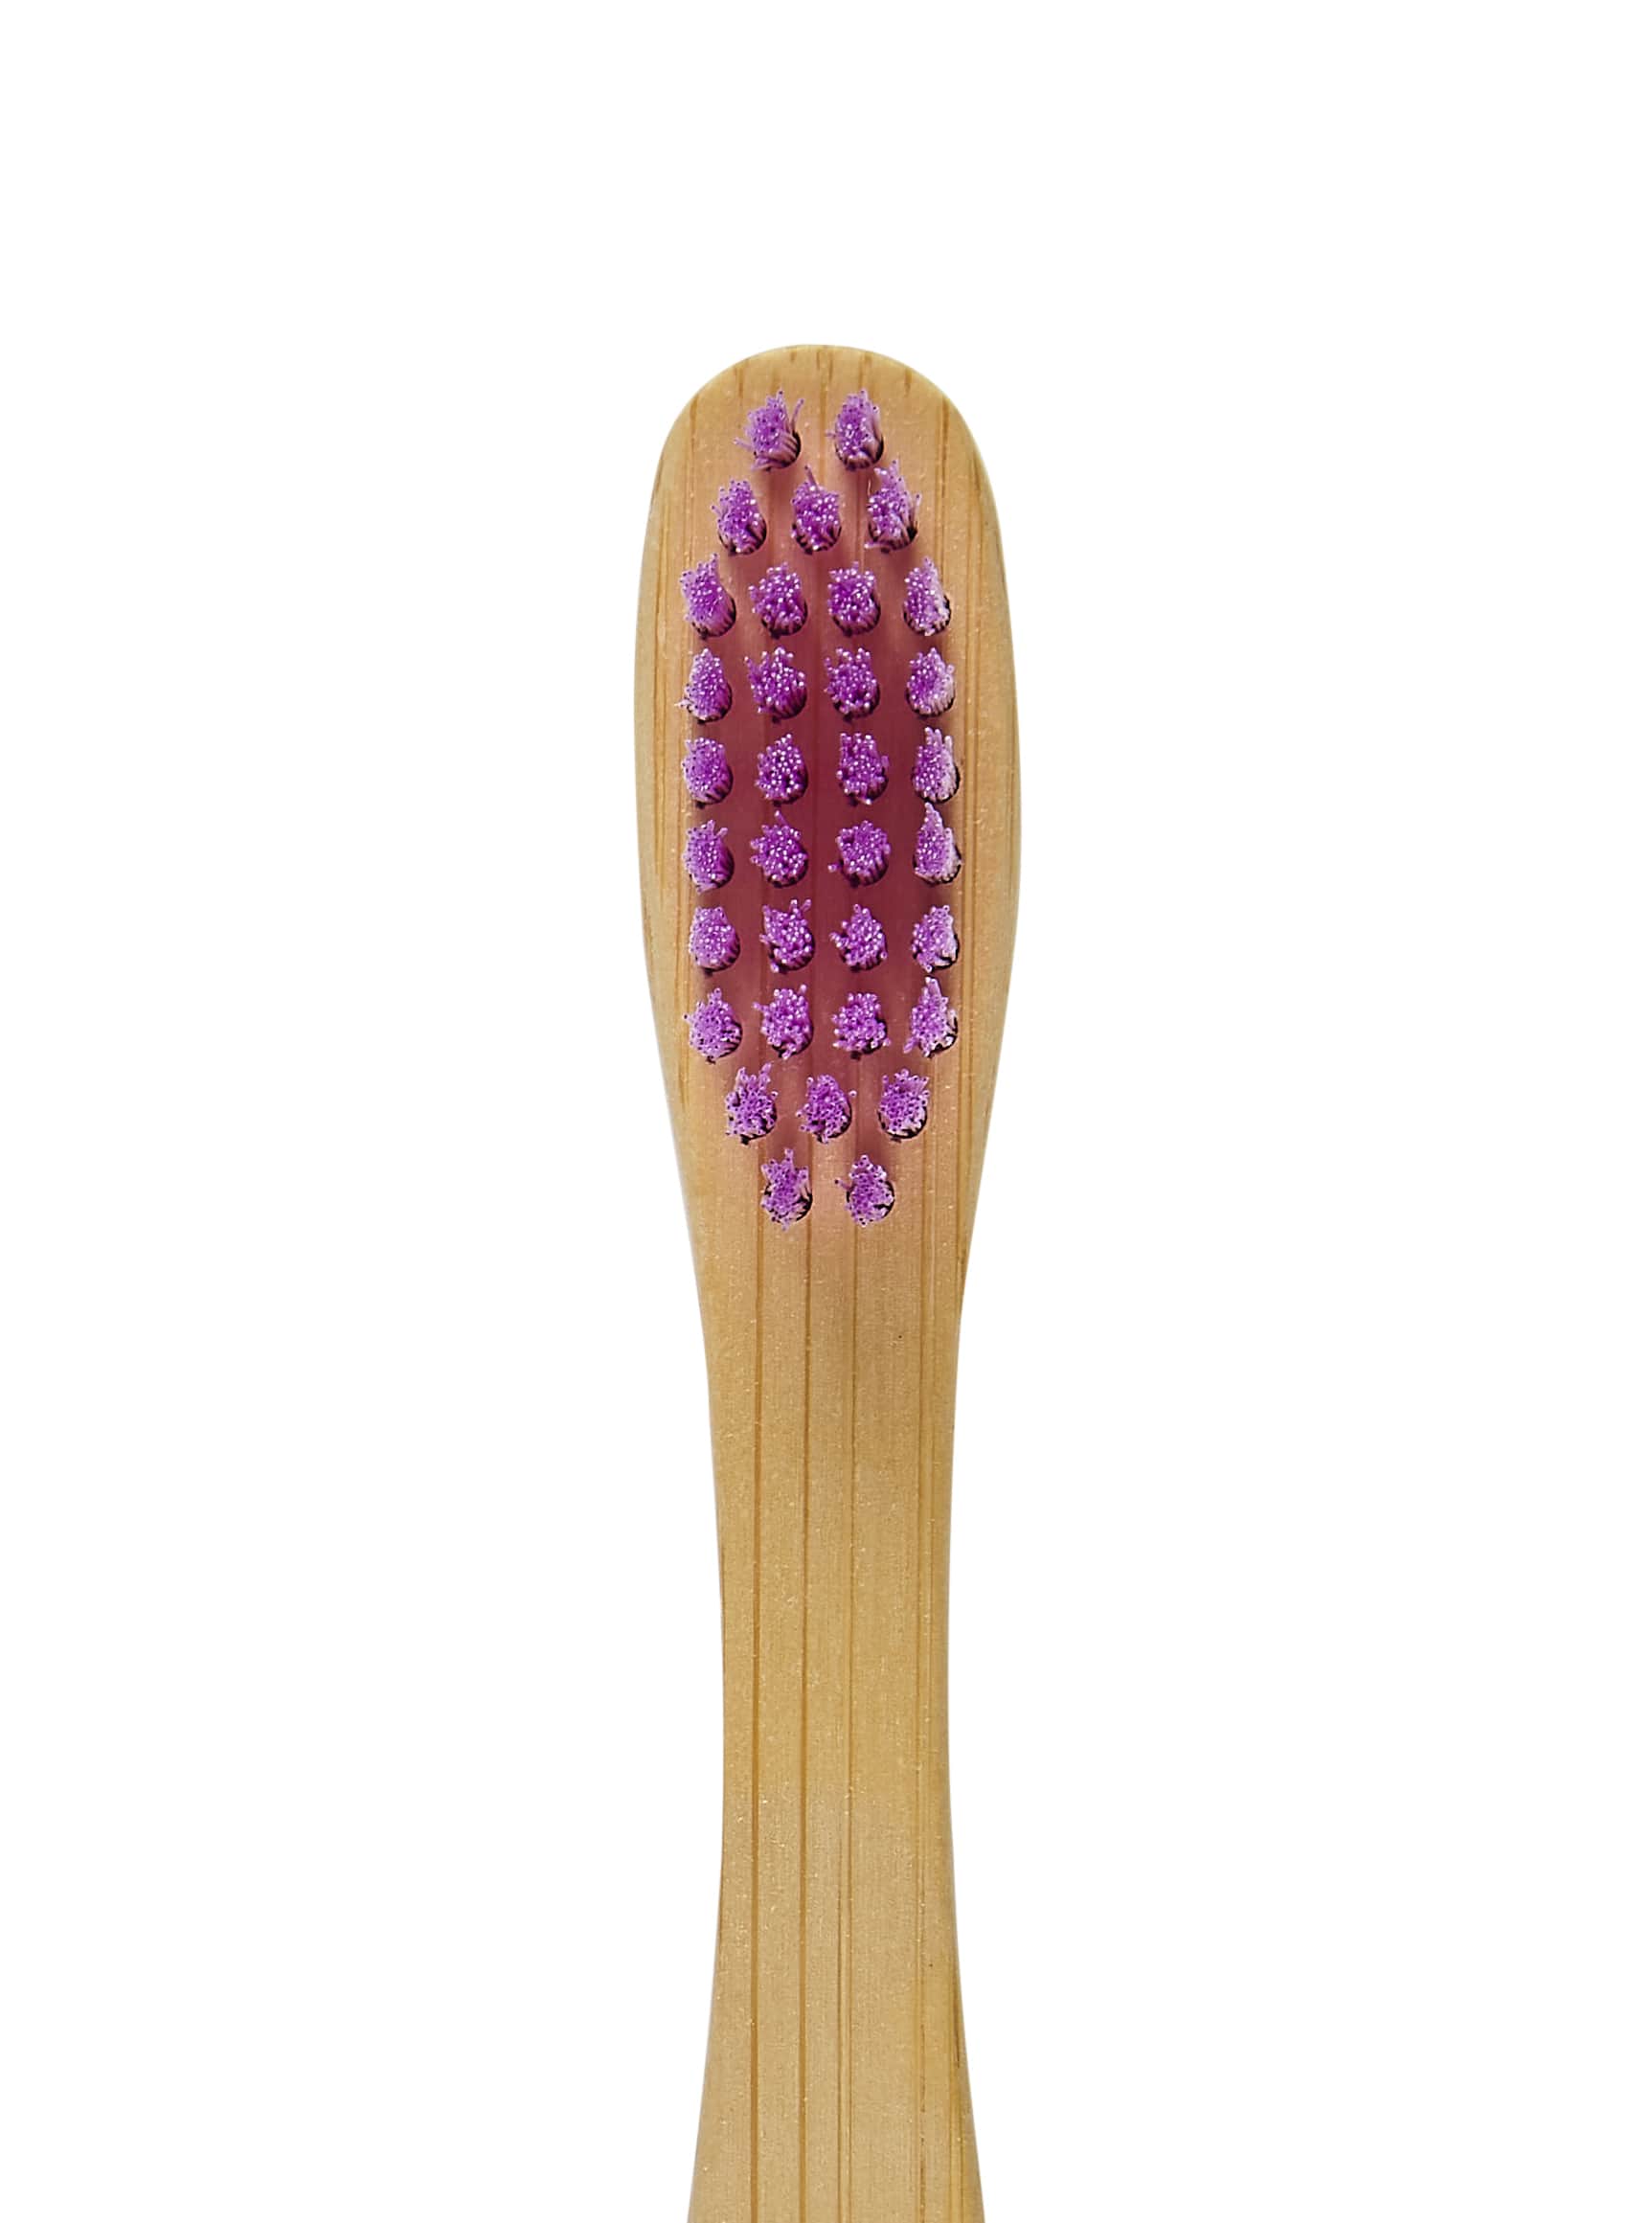 Toothbrush bristles in purple